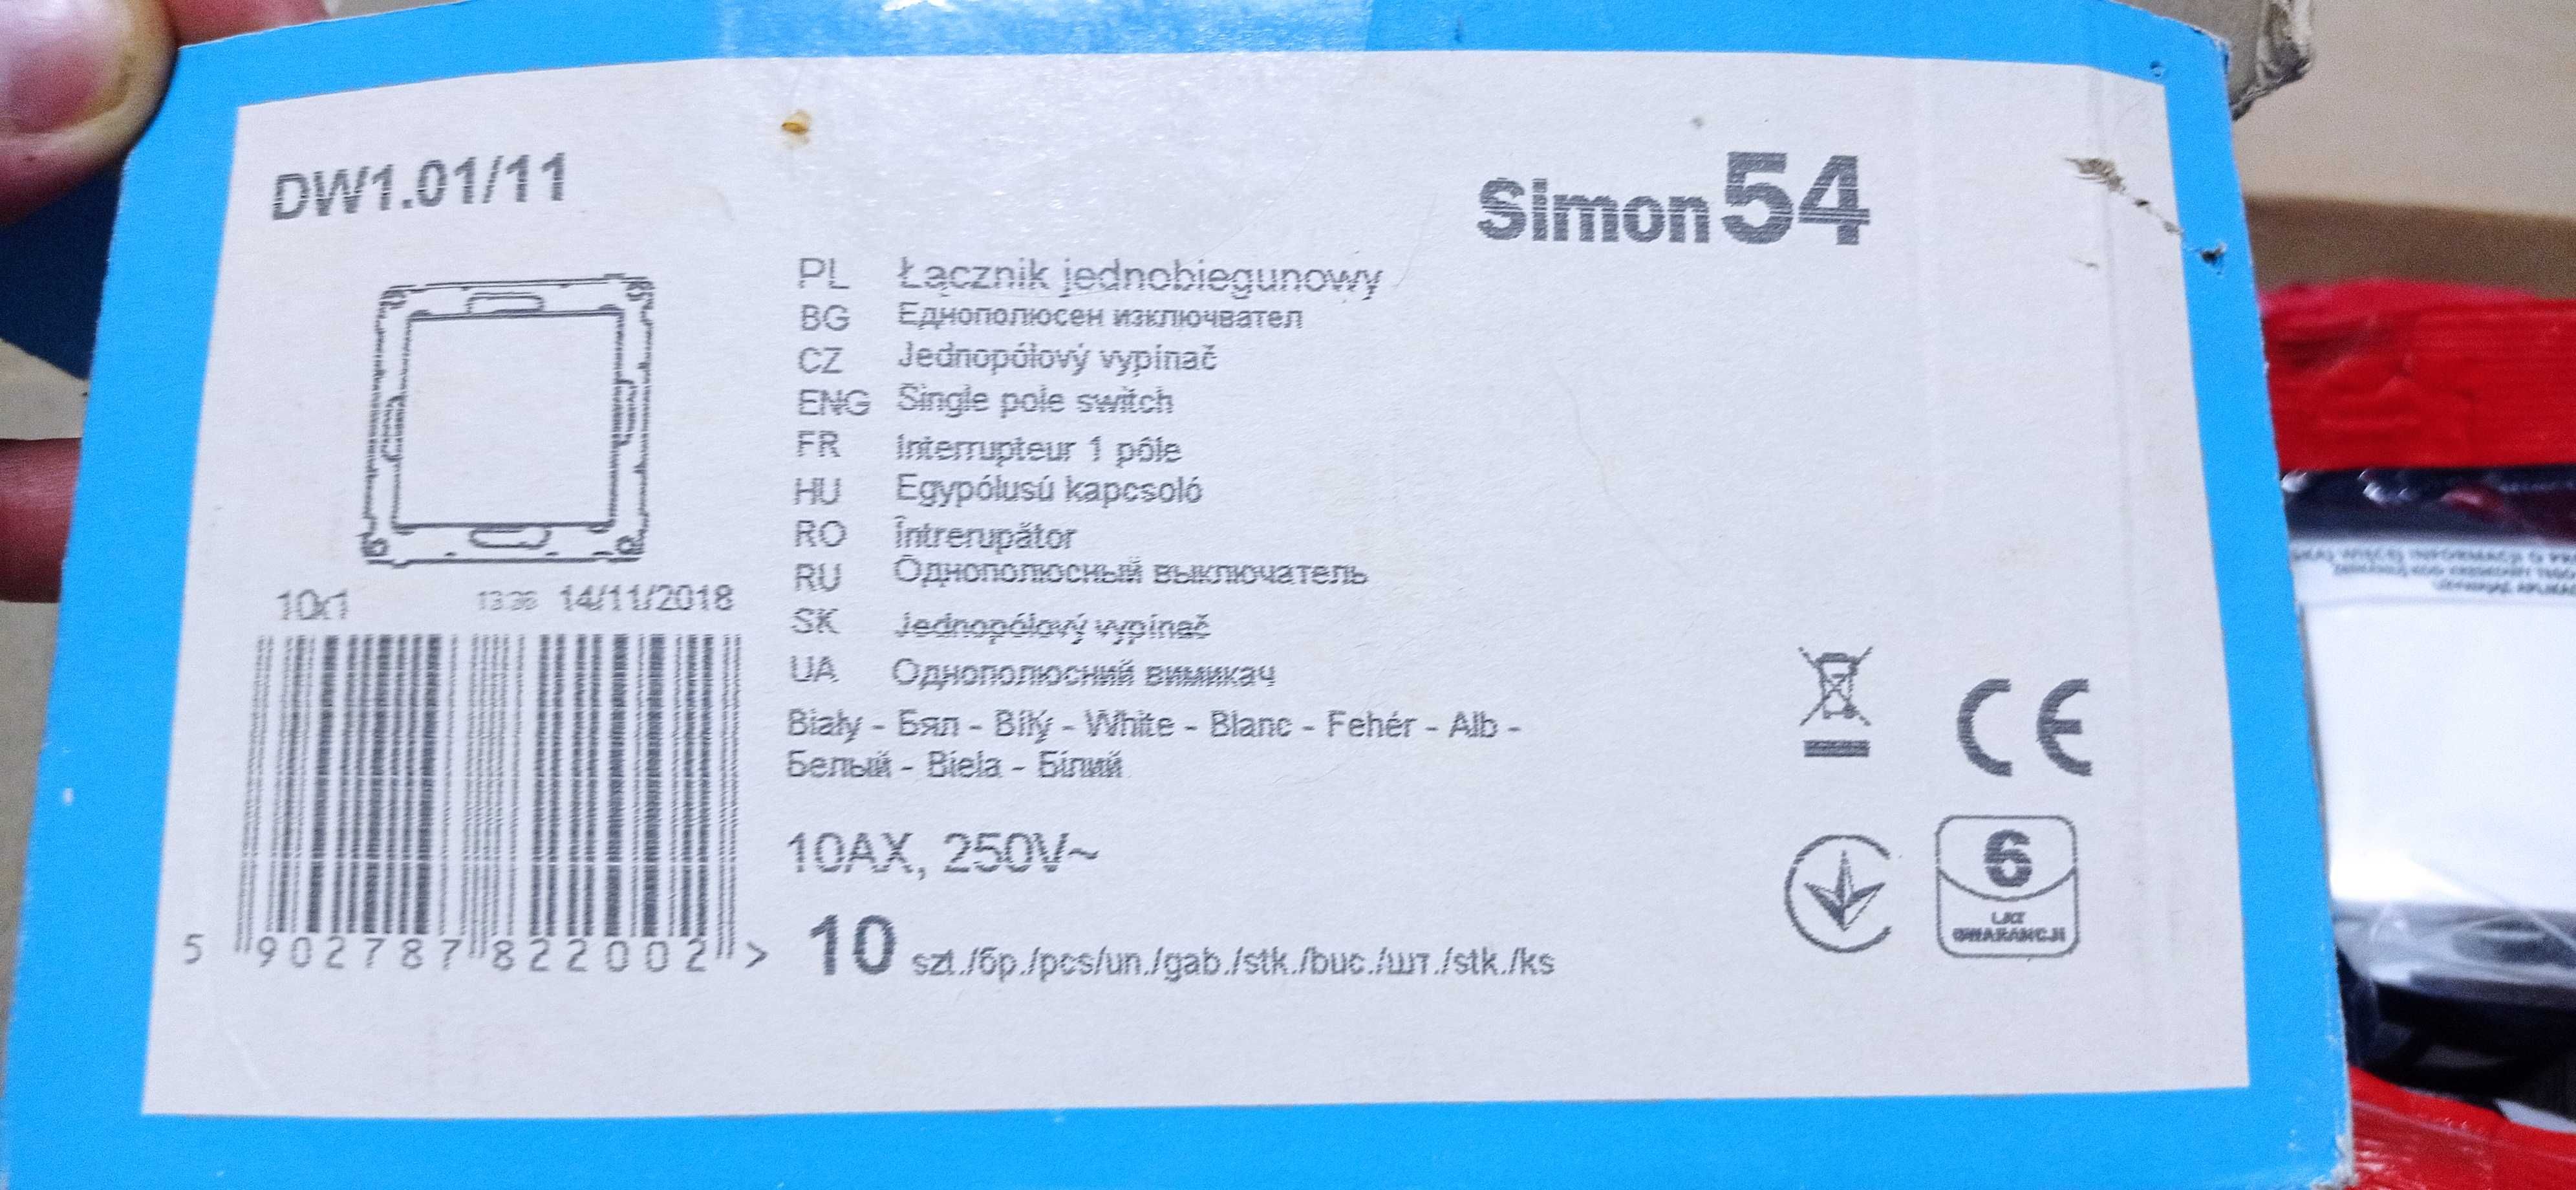 Łącznik jednobiegunowy SIMON 54